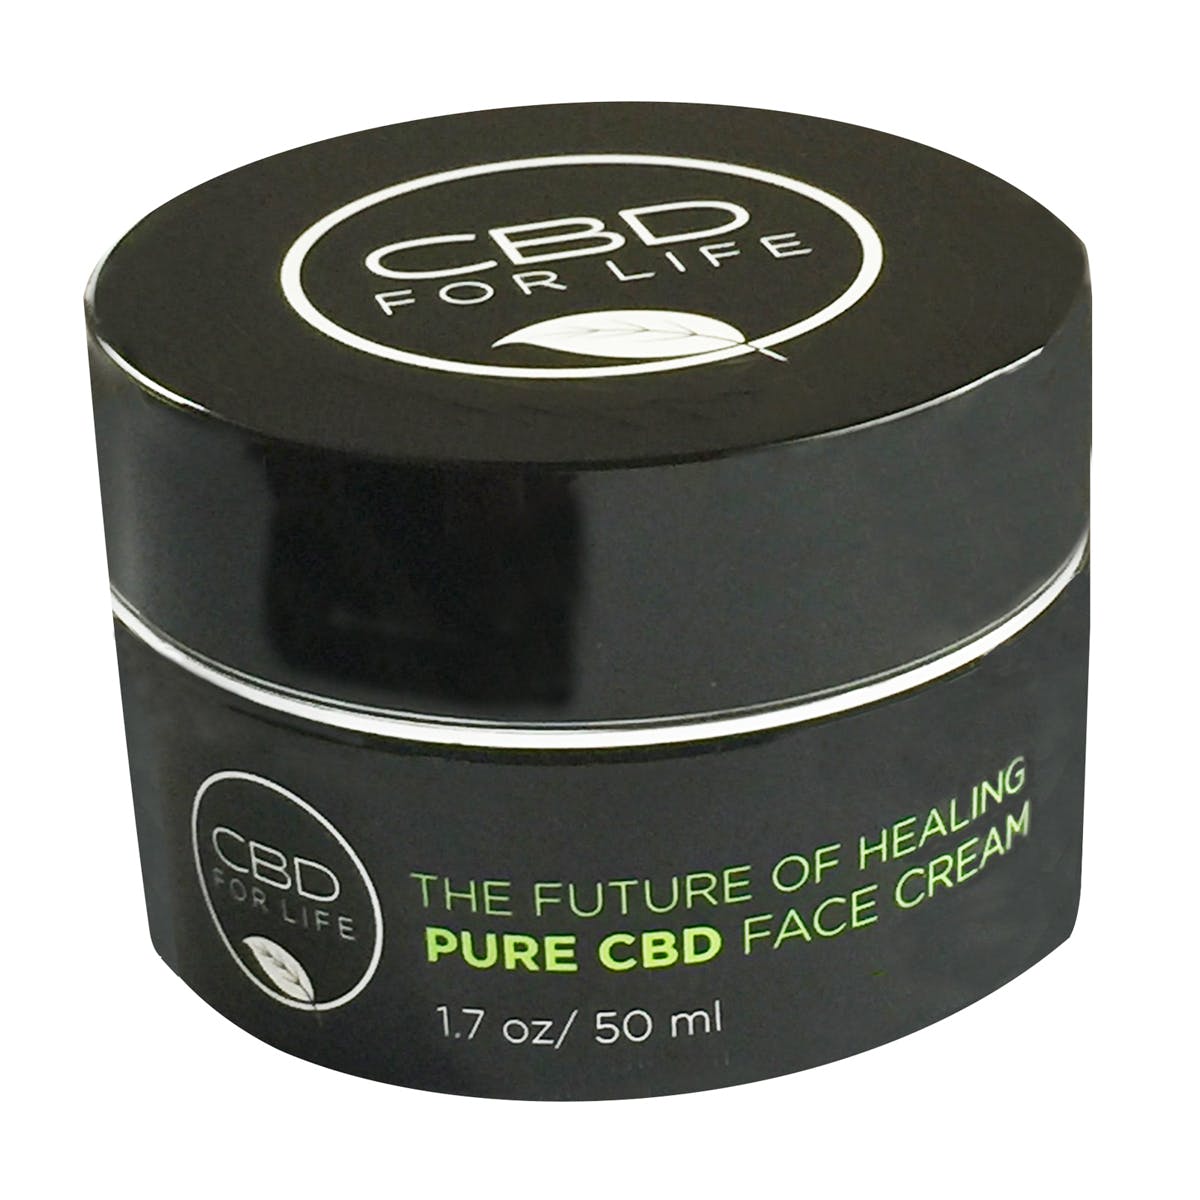 Pure CBD Face Cream